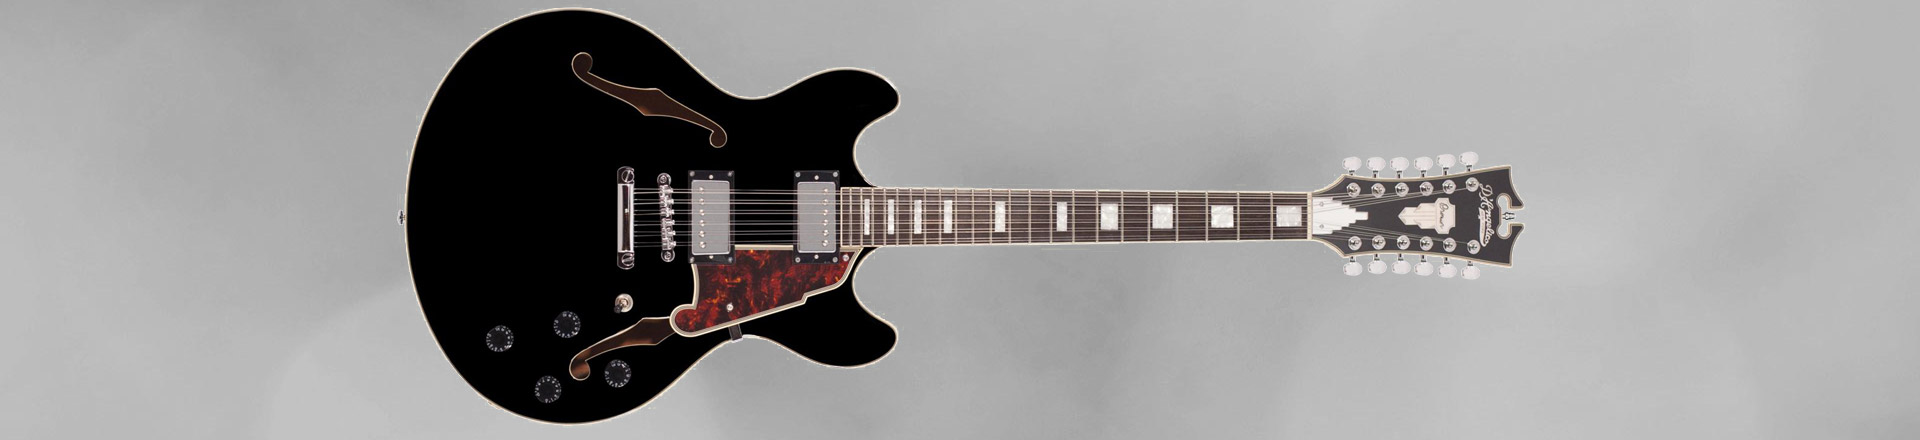 D'Angelico Guitars przedstawia 12-strunowy model DC12 